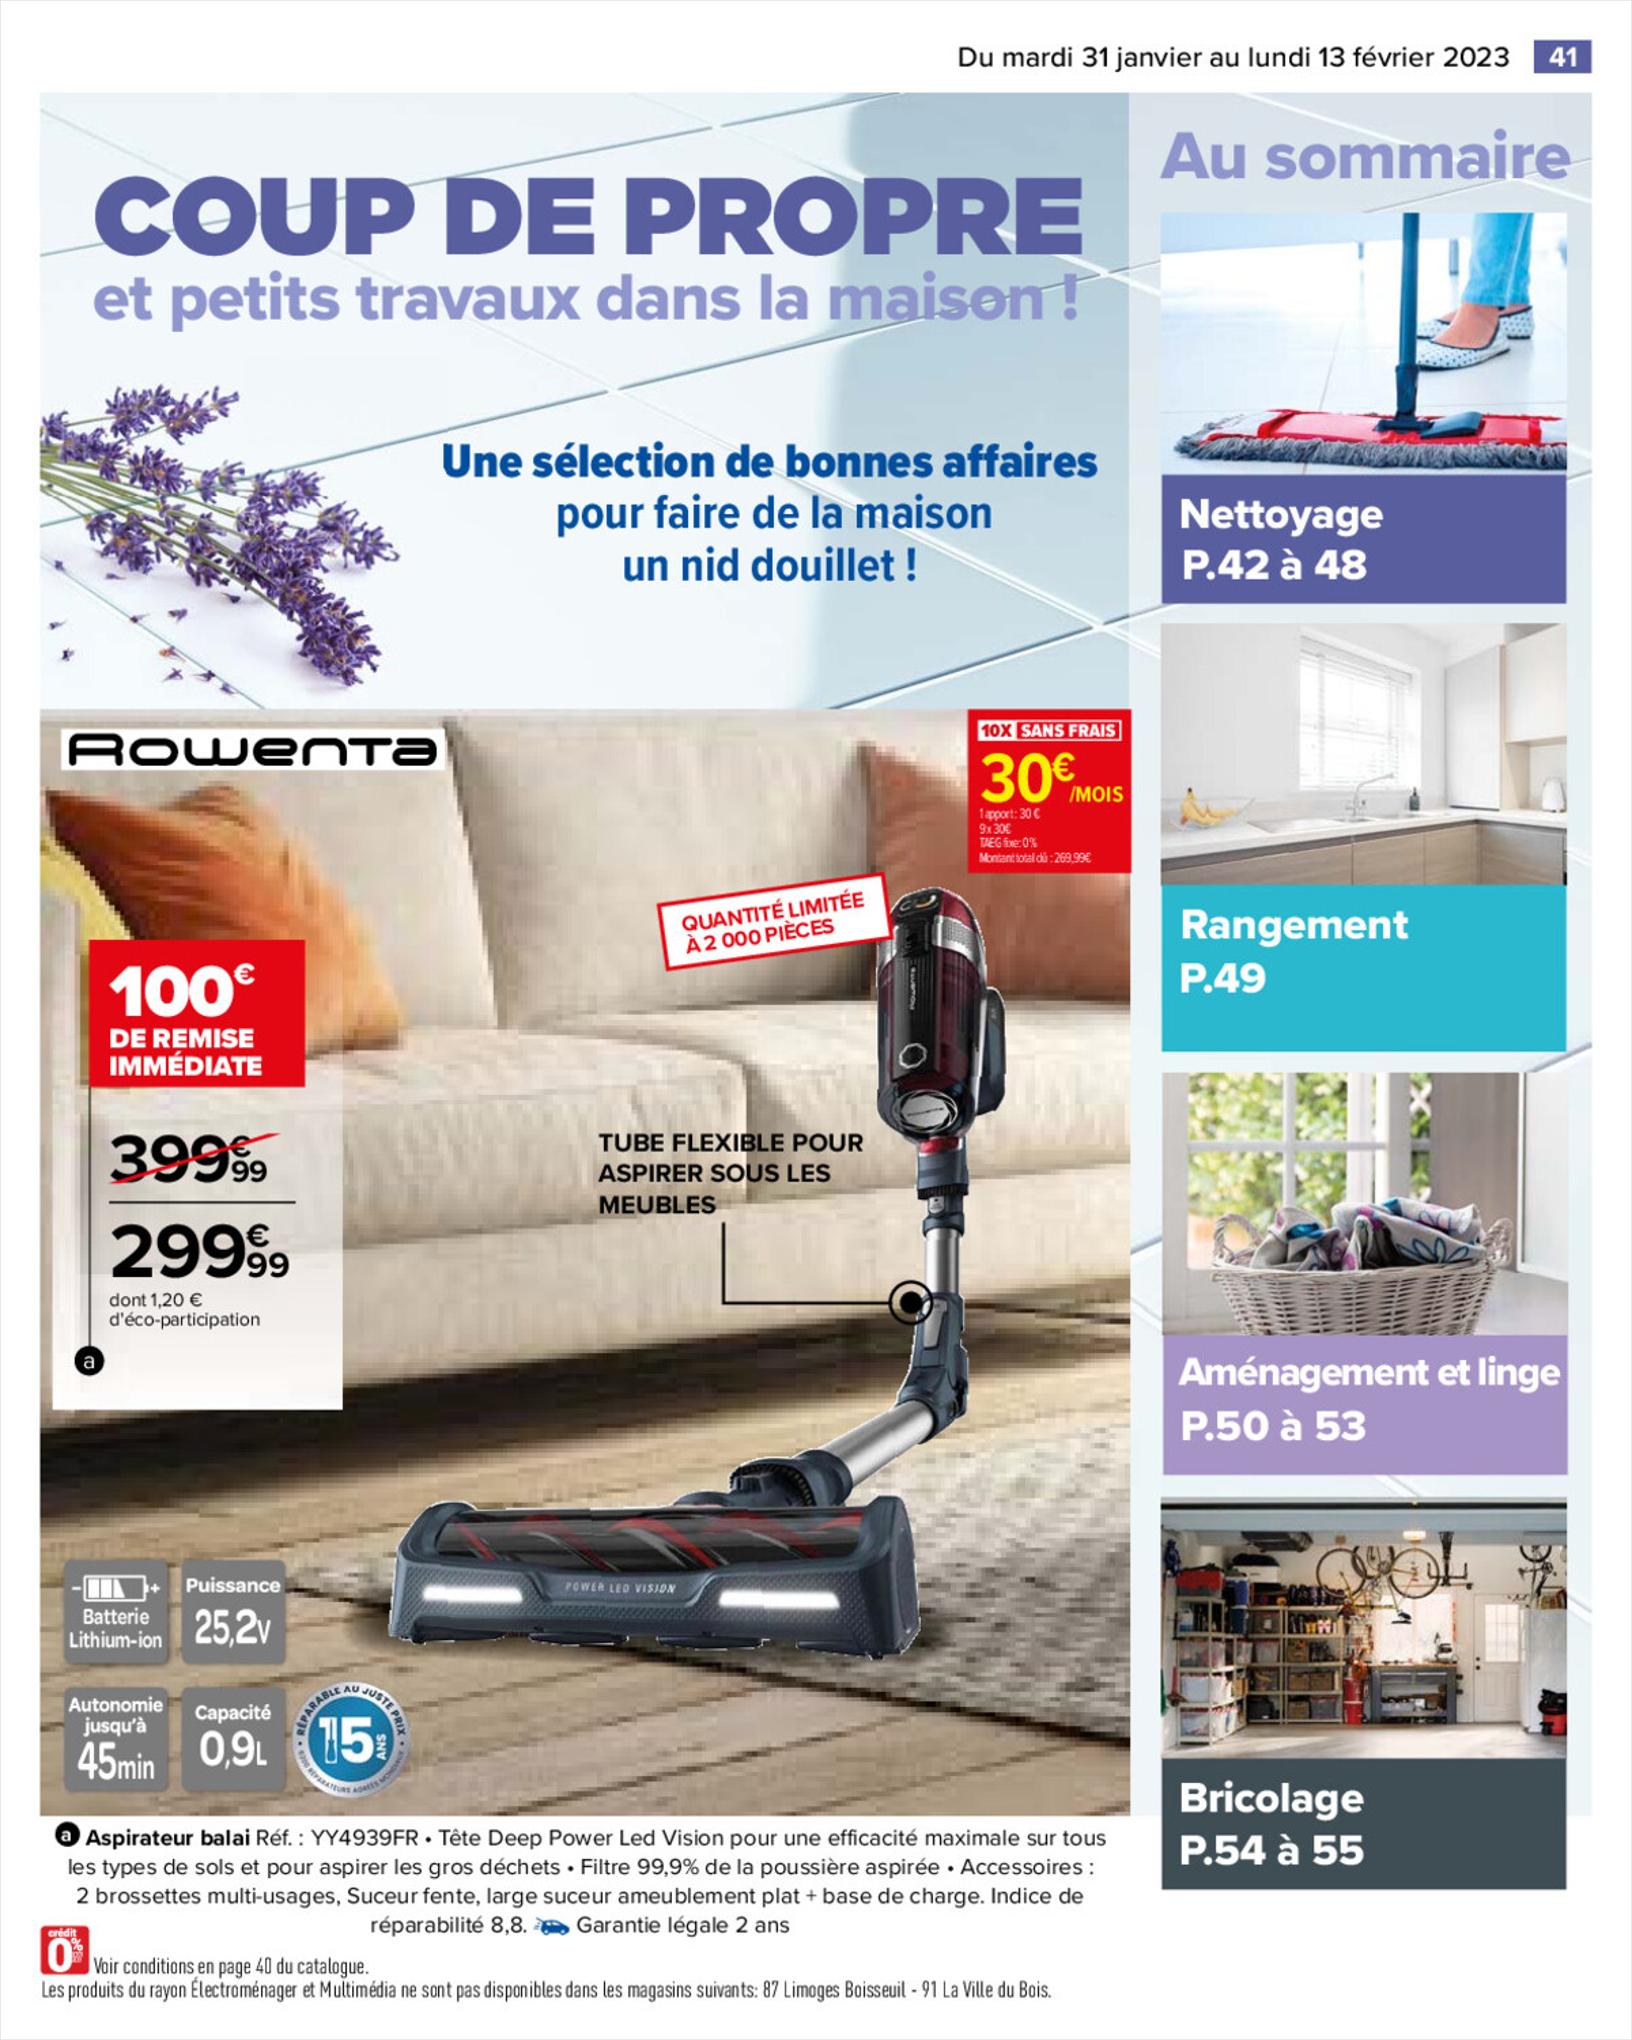 Catalogue COUP DE PROPRE dans la maison !, page 00045